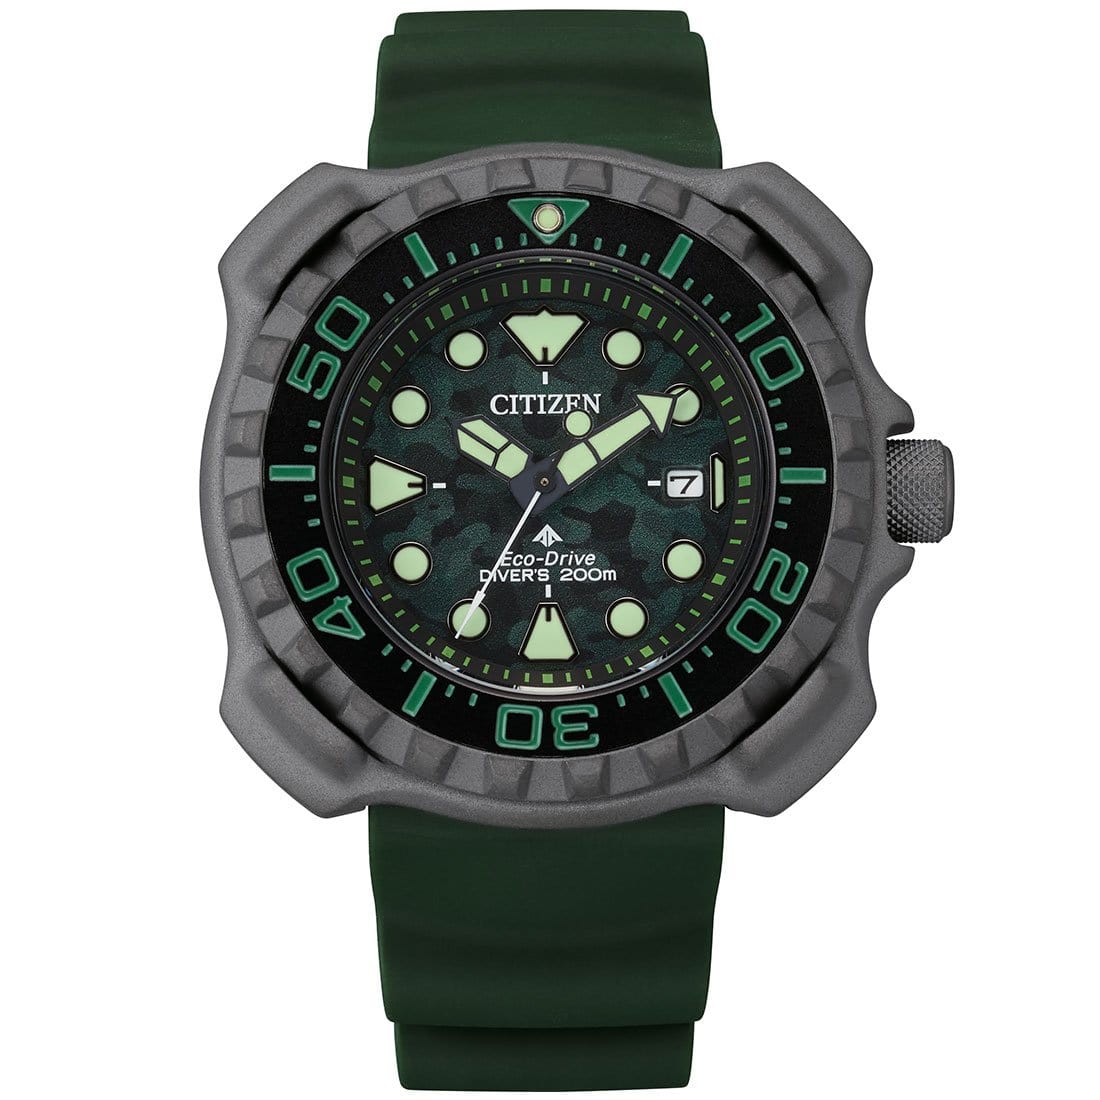 BN0228-06W Citizen Promaster Eco-Drive Divers Super Titanium 200m Men's Watch